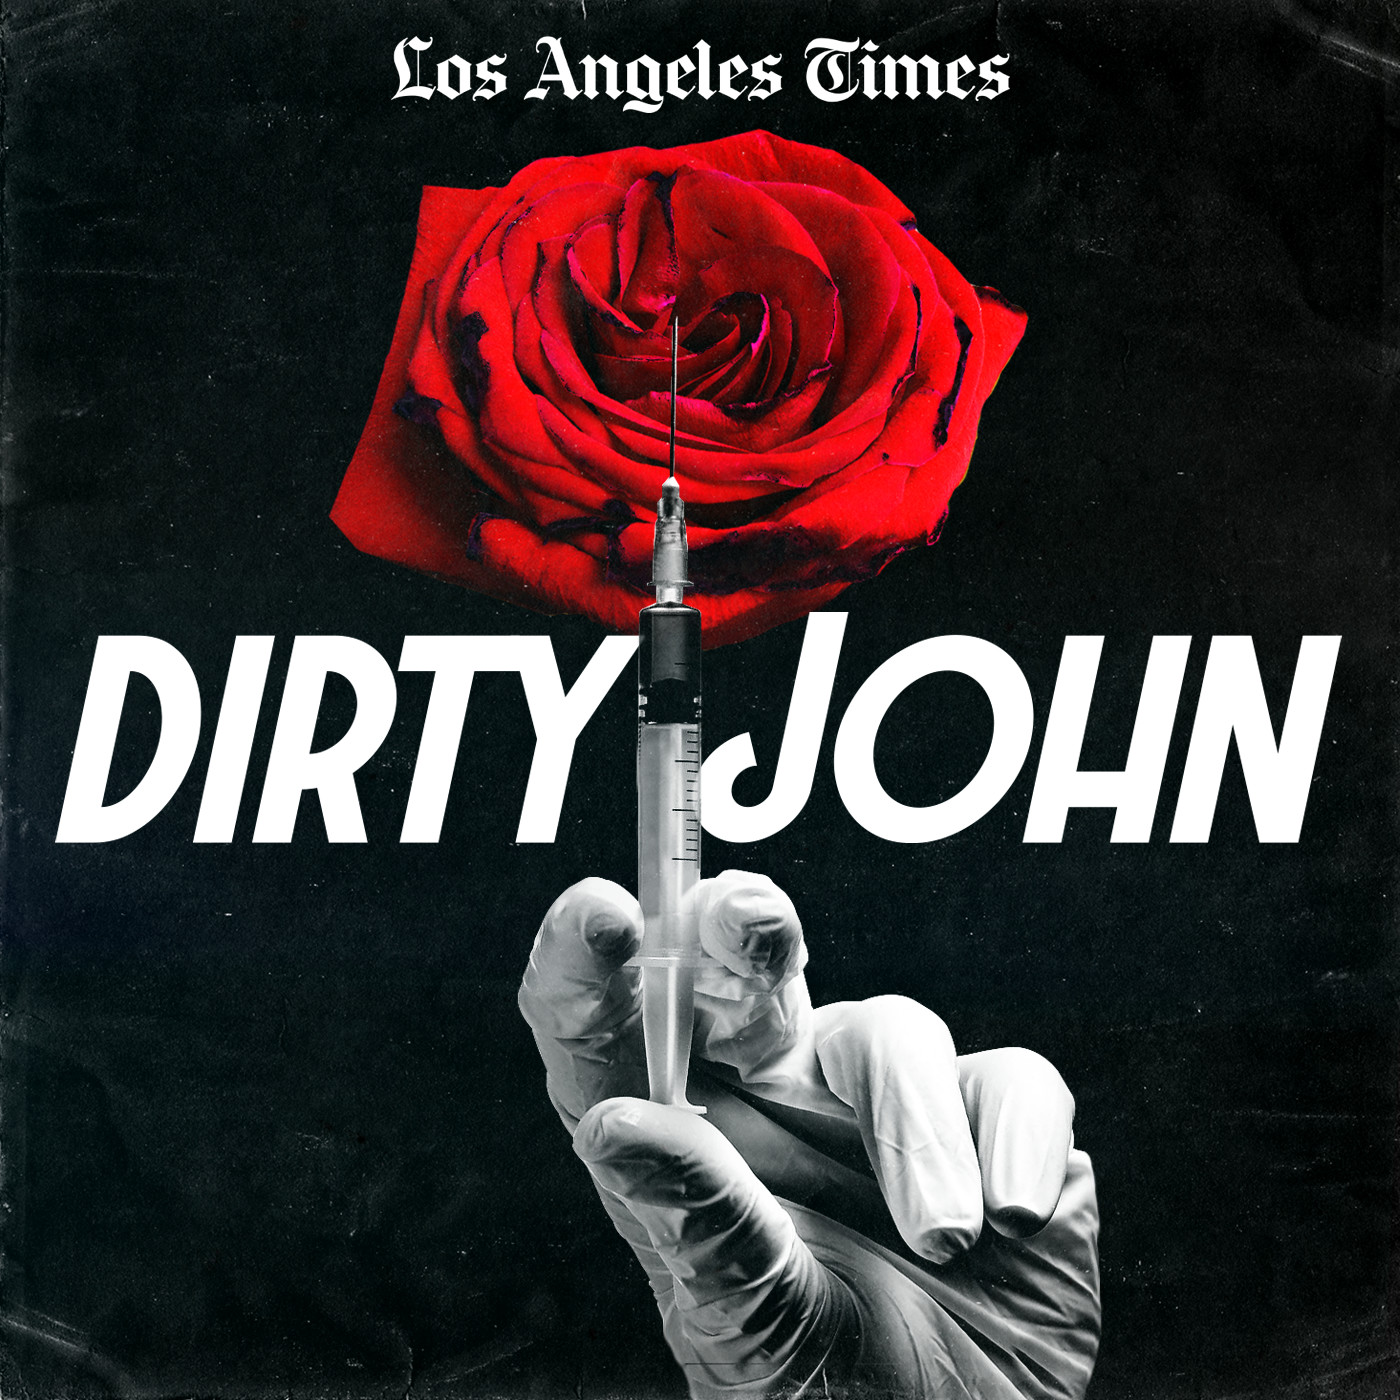 Introducing Dirty John